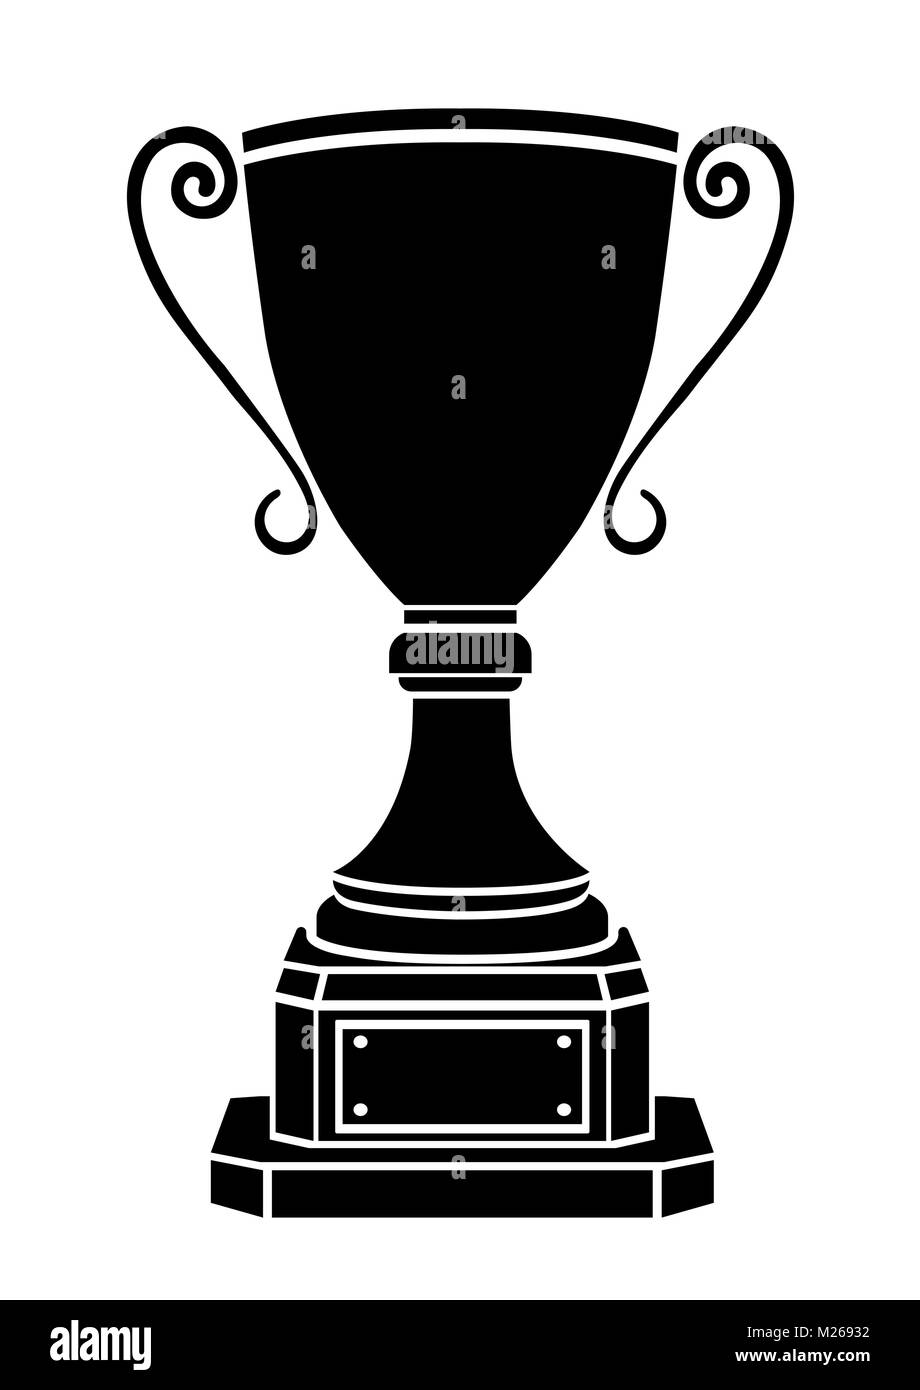 Vincitore della Coppa icona Vettore, logo, segno, emblema, premio calice nominale, silhouette isolati su sfondo bianco Illustrazione Vettoriale